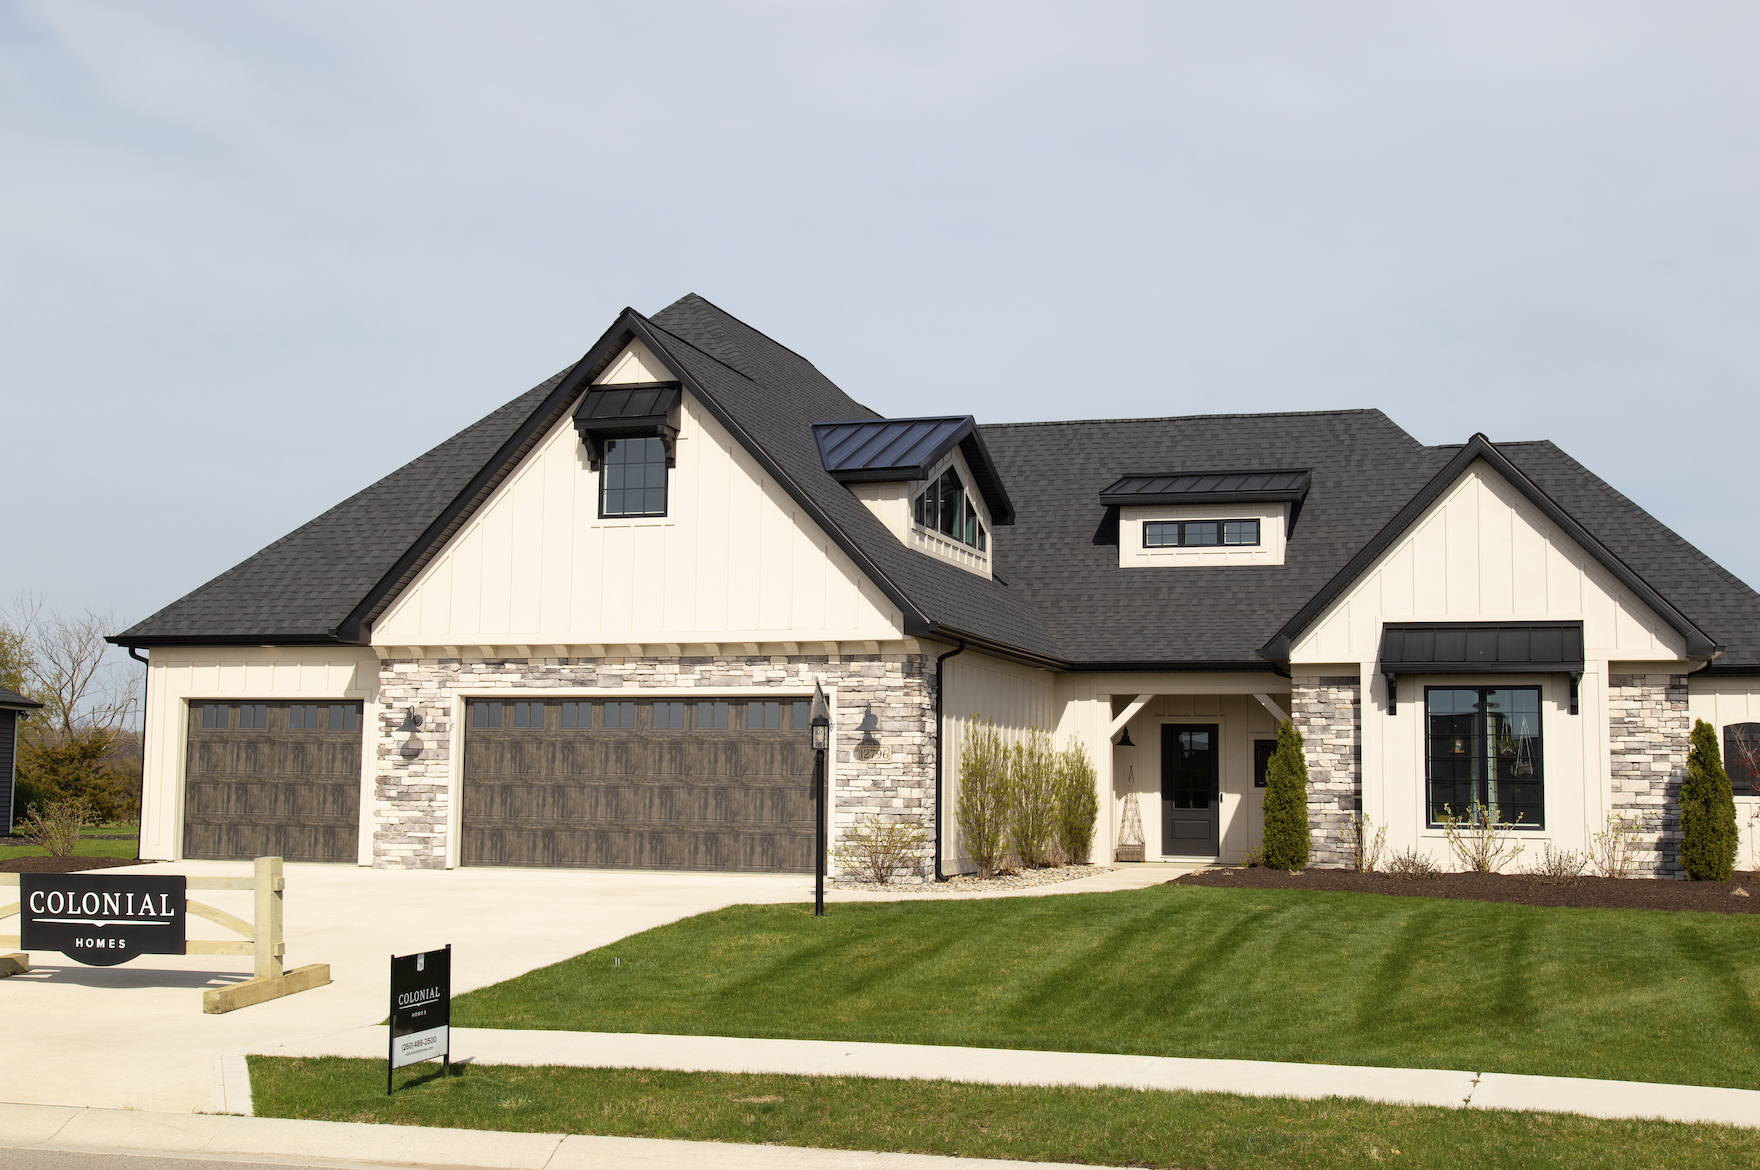 Visit our Eagle Rock Model Home